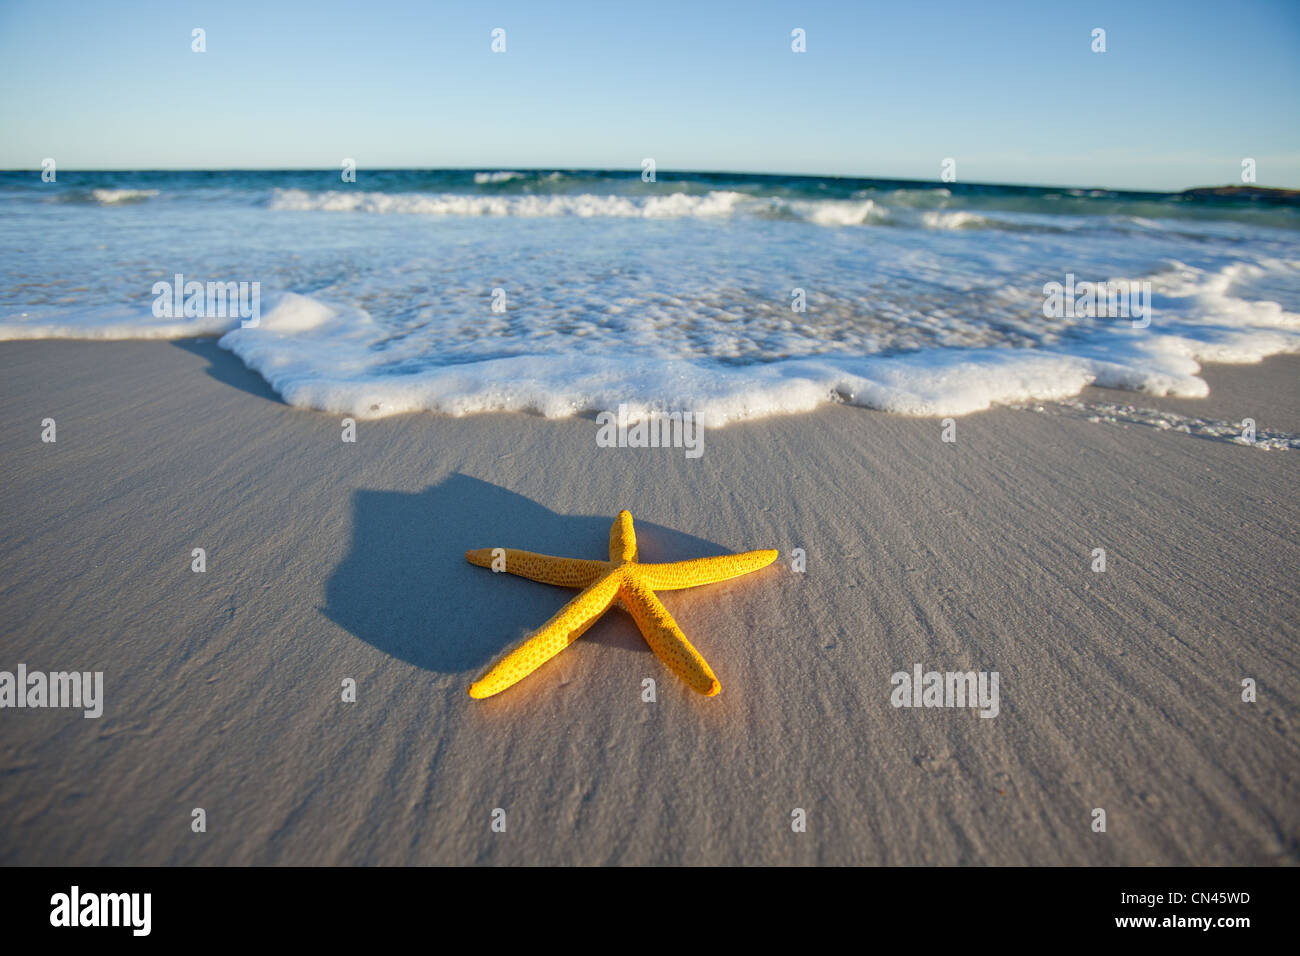 L'étoile jaune sur une plage au sud de l'Australie Banque D'Images